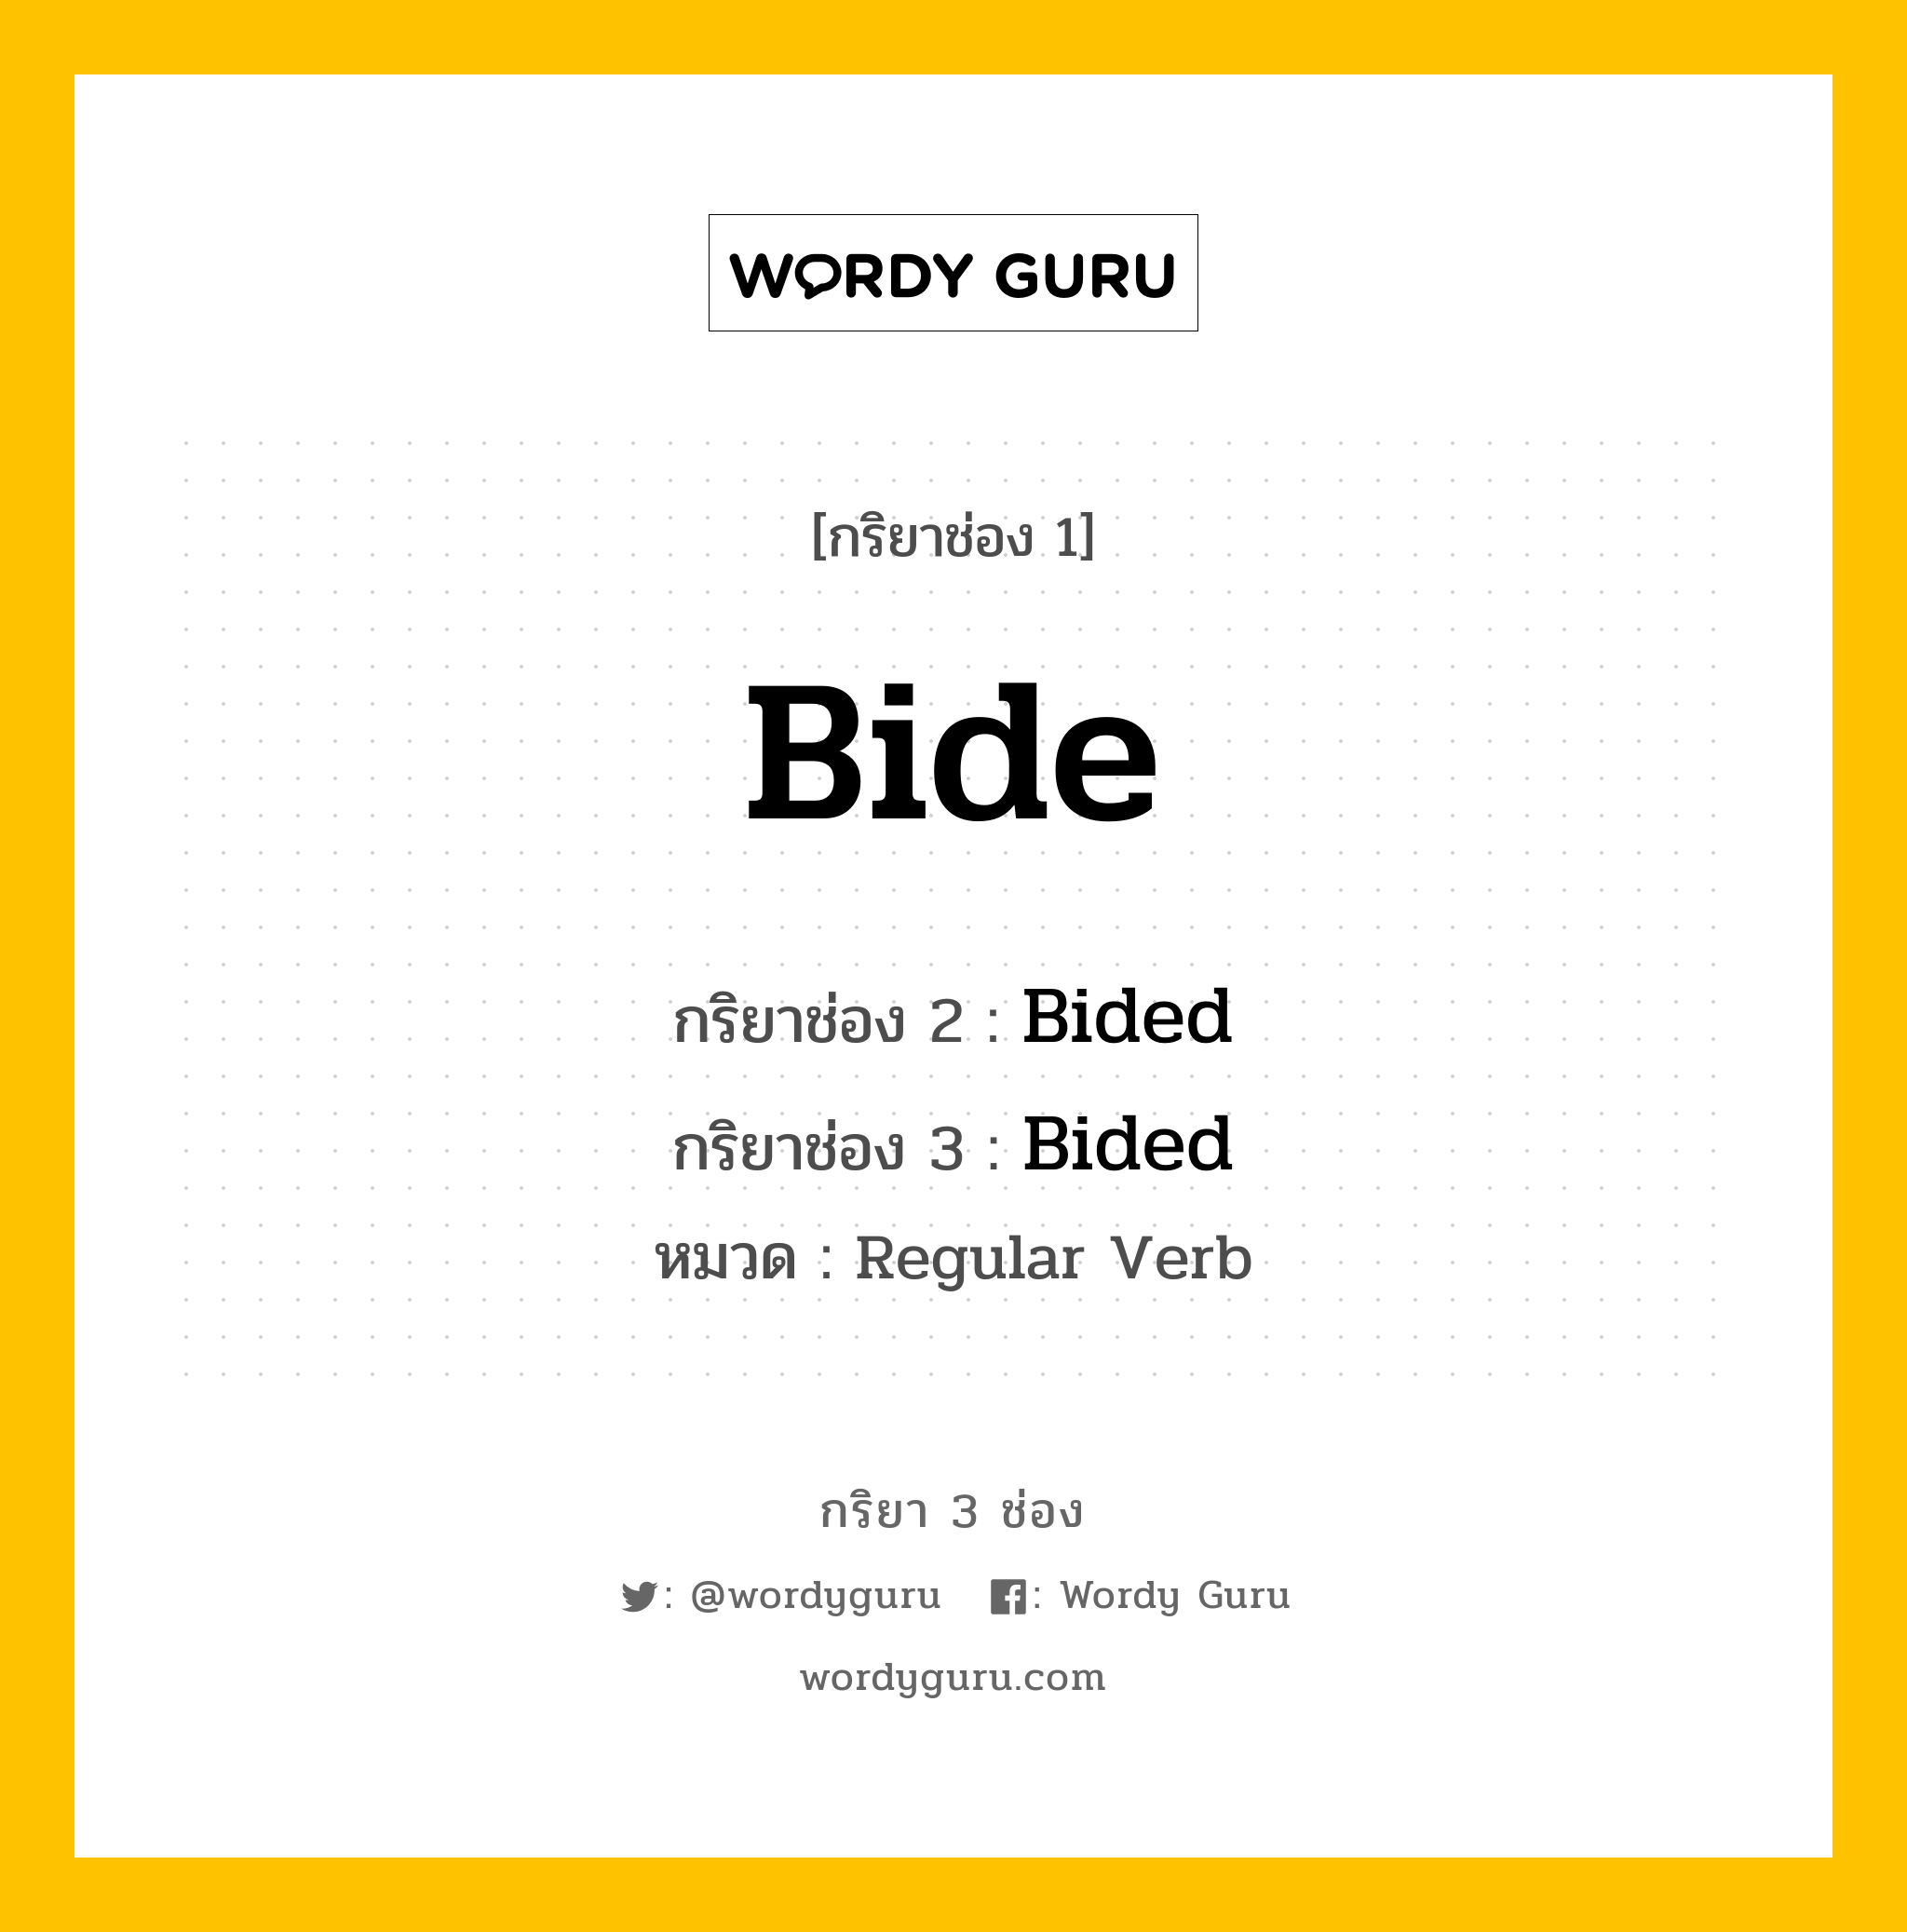 กริยา 3 ช่อง: Bide ช่อง 2 Bide ช่อง 3 คืออะไร, กริยาช่อง 1 Bide กริยาช่อง 2 Bided กริยาช่อง 3 Bided หมวด Regular Verb มีหลายแบบ y หมวด Regular Verb